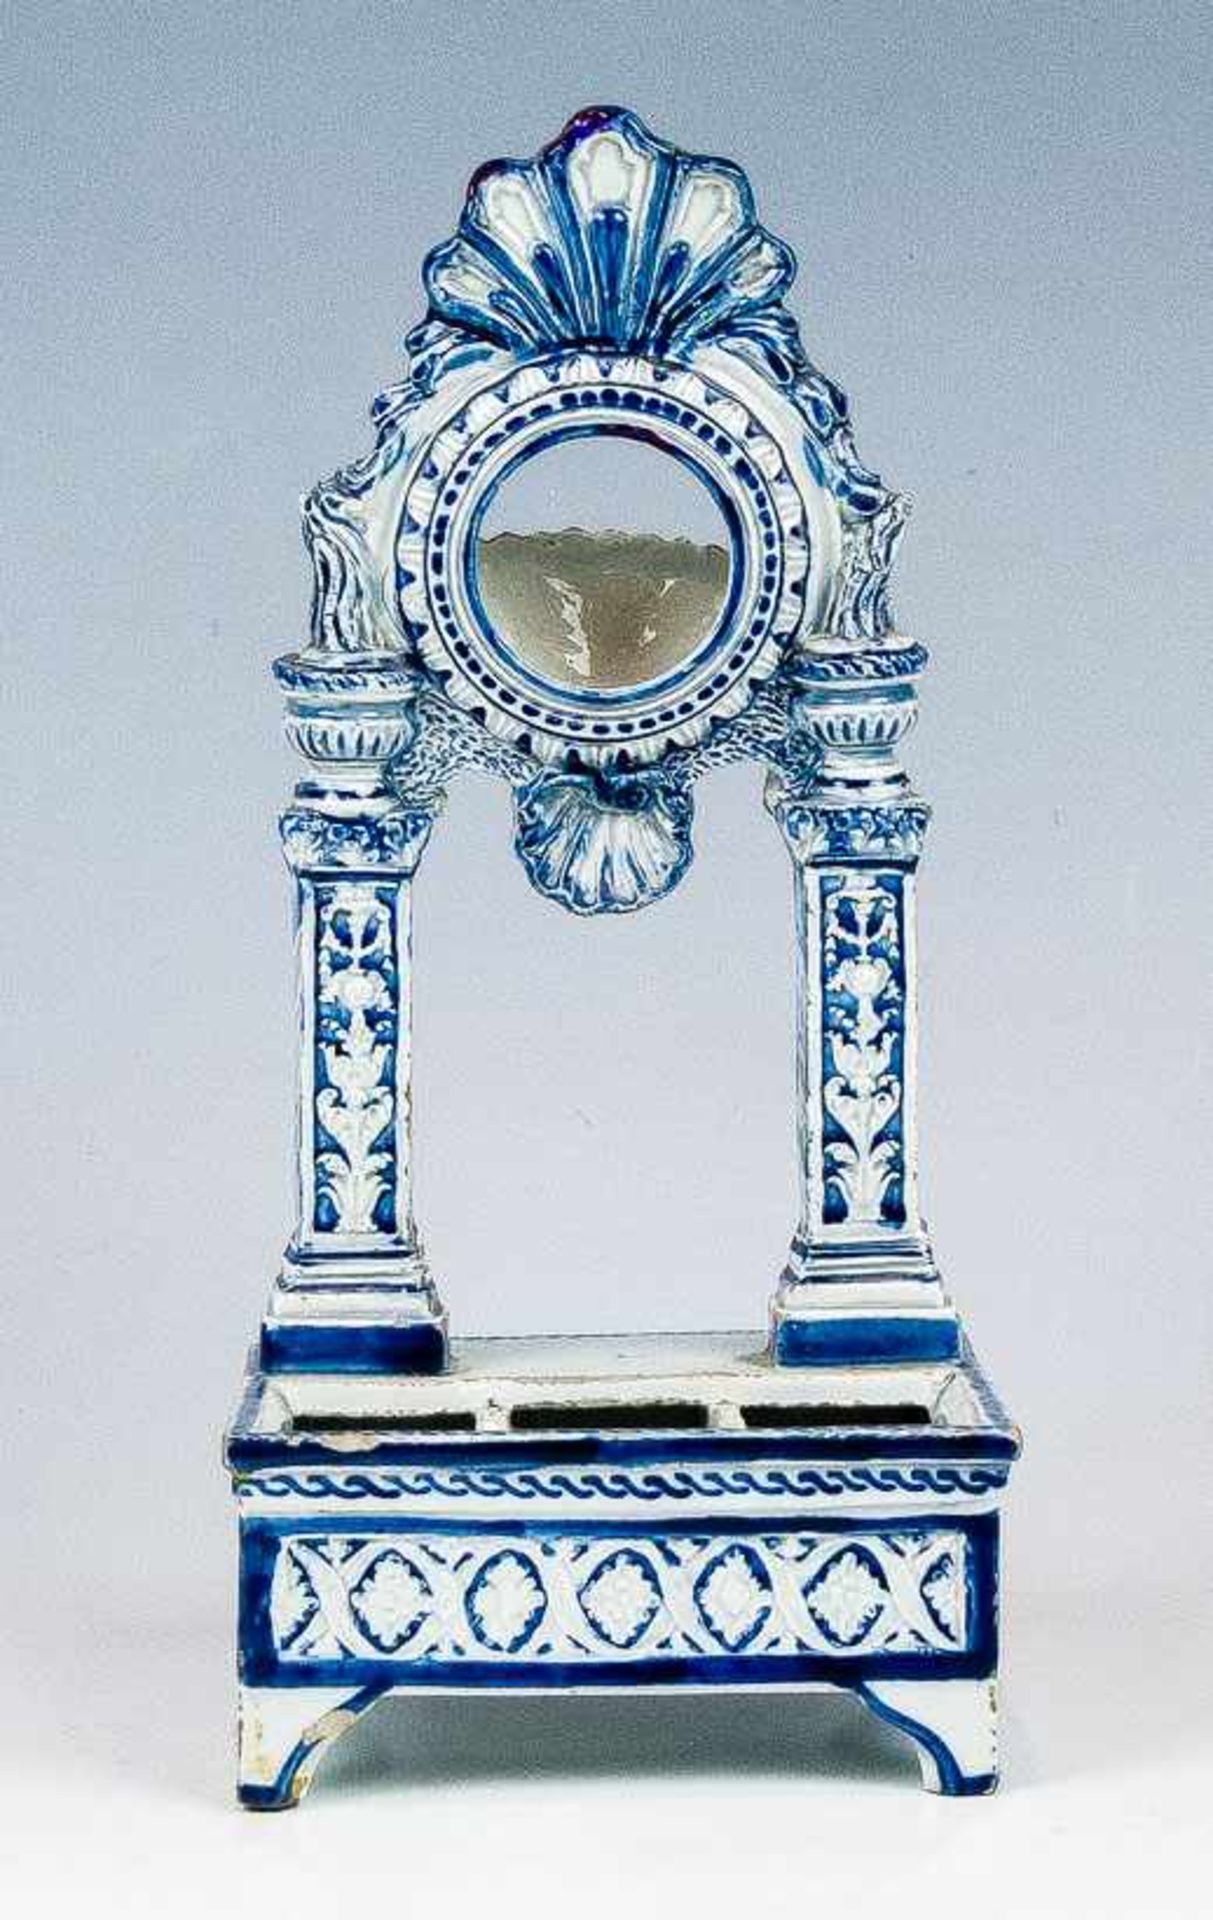 Uhrenhalterung19. Jh.Fayence. Weiße Glasur, Bemalung in Blau. In Form einer Renaissance-Ädikula